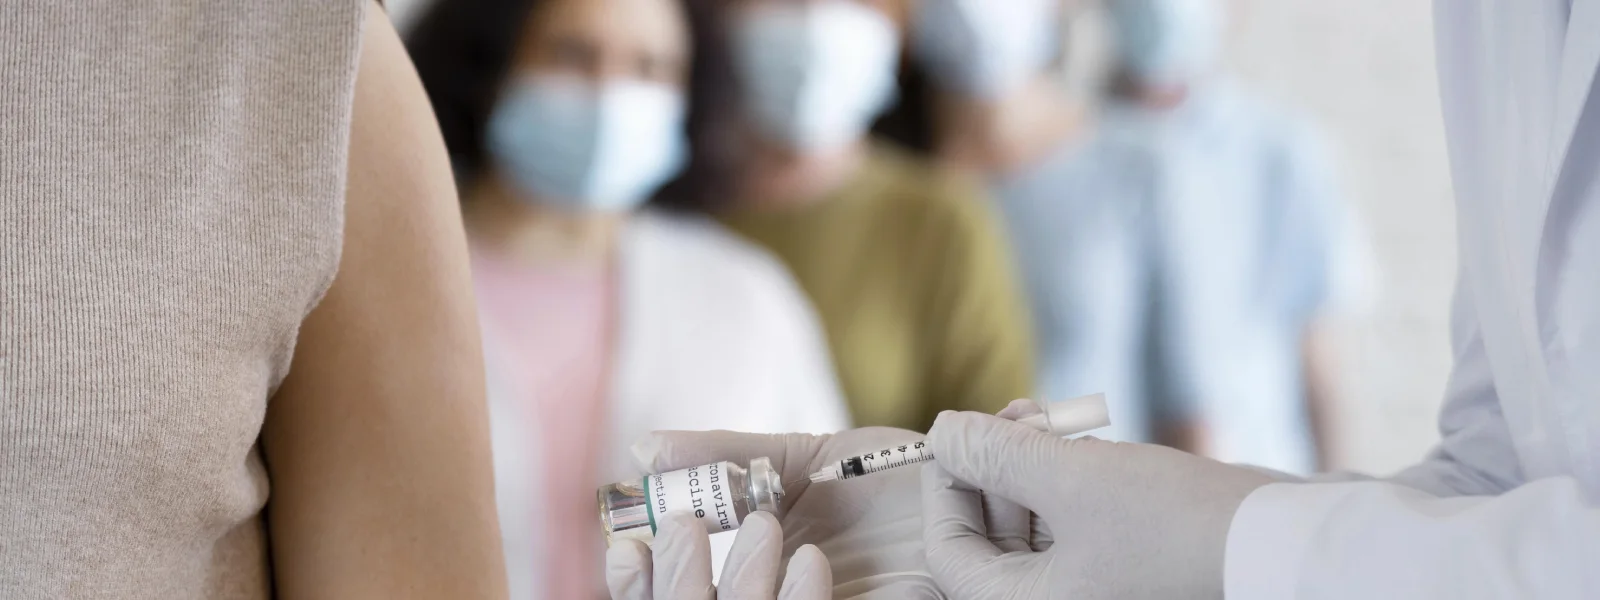 Grip Aşısı Hakkında Merak Edilen Sorular ve Cevapları